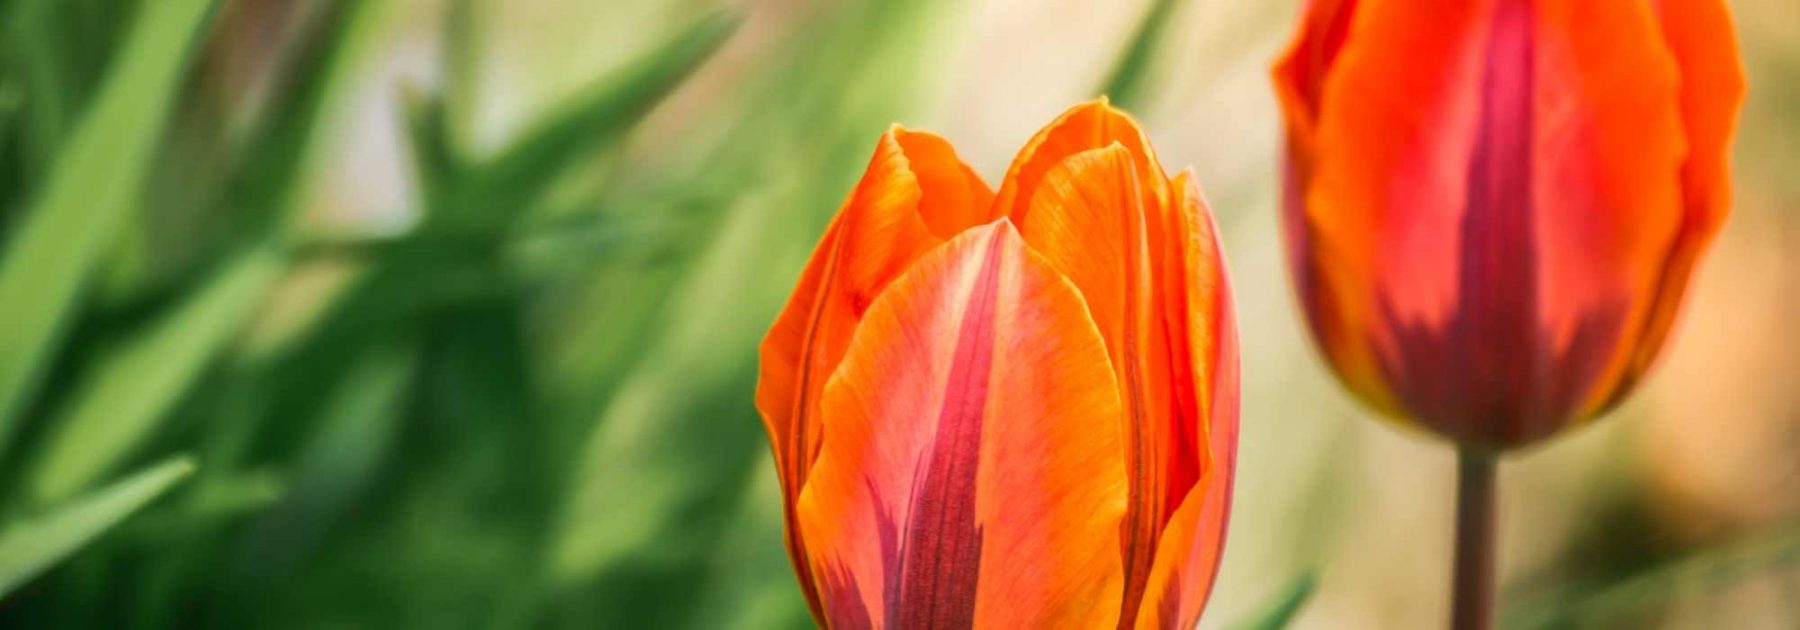 Tulipe : nos conseils pour échelonner les floraisons